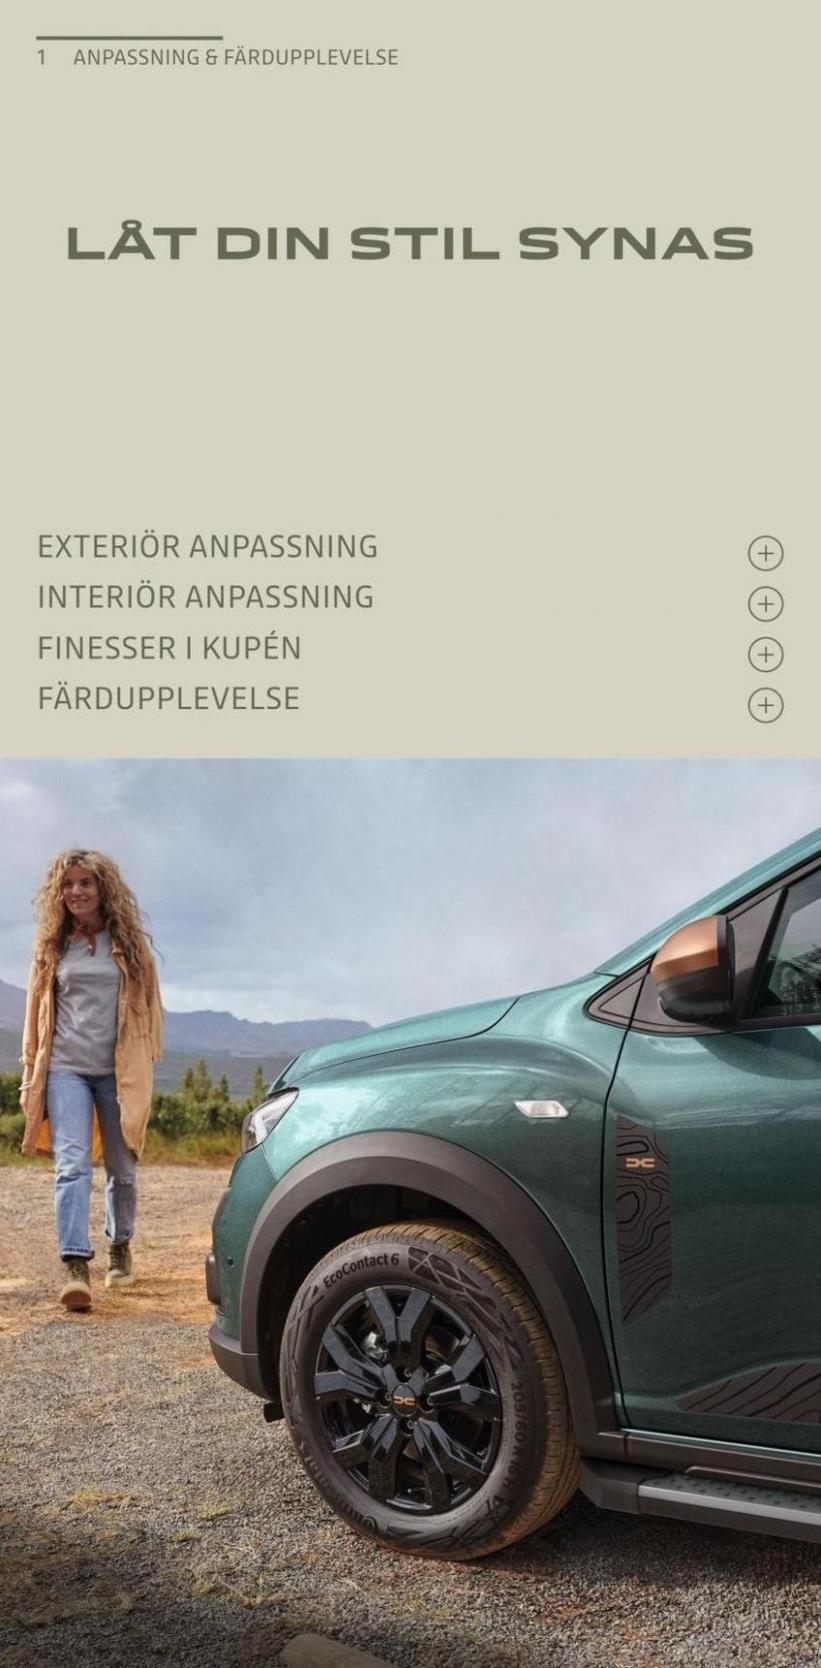 Dacia Jogger - Tillbehörskatalog. Page 3